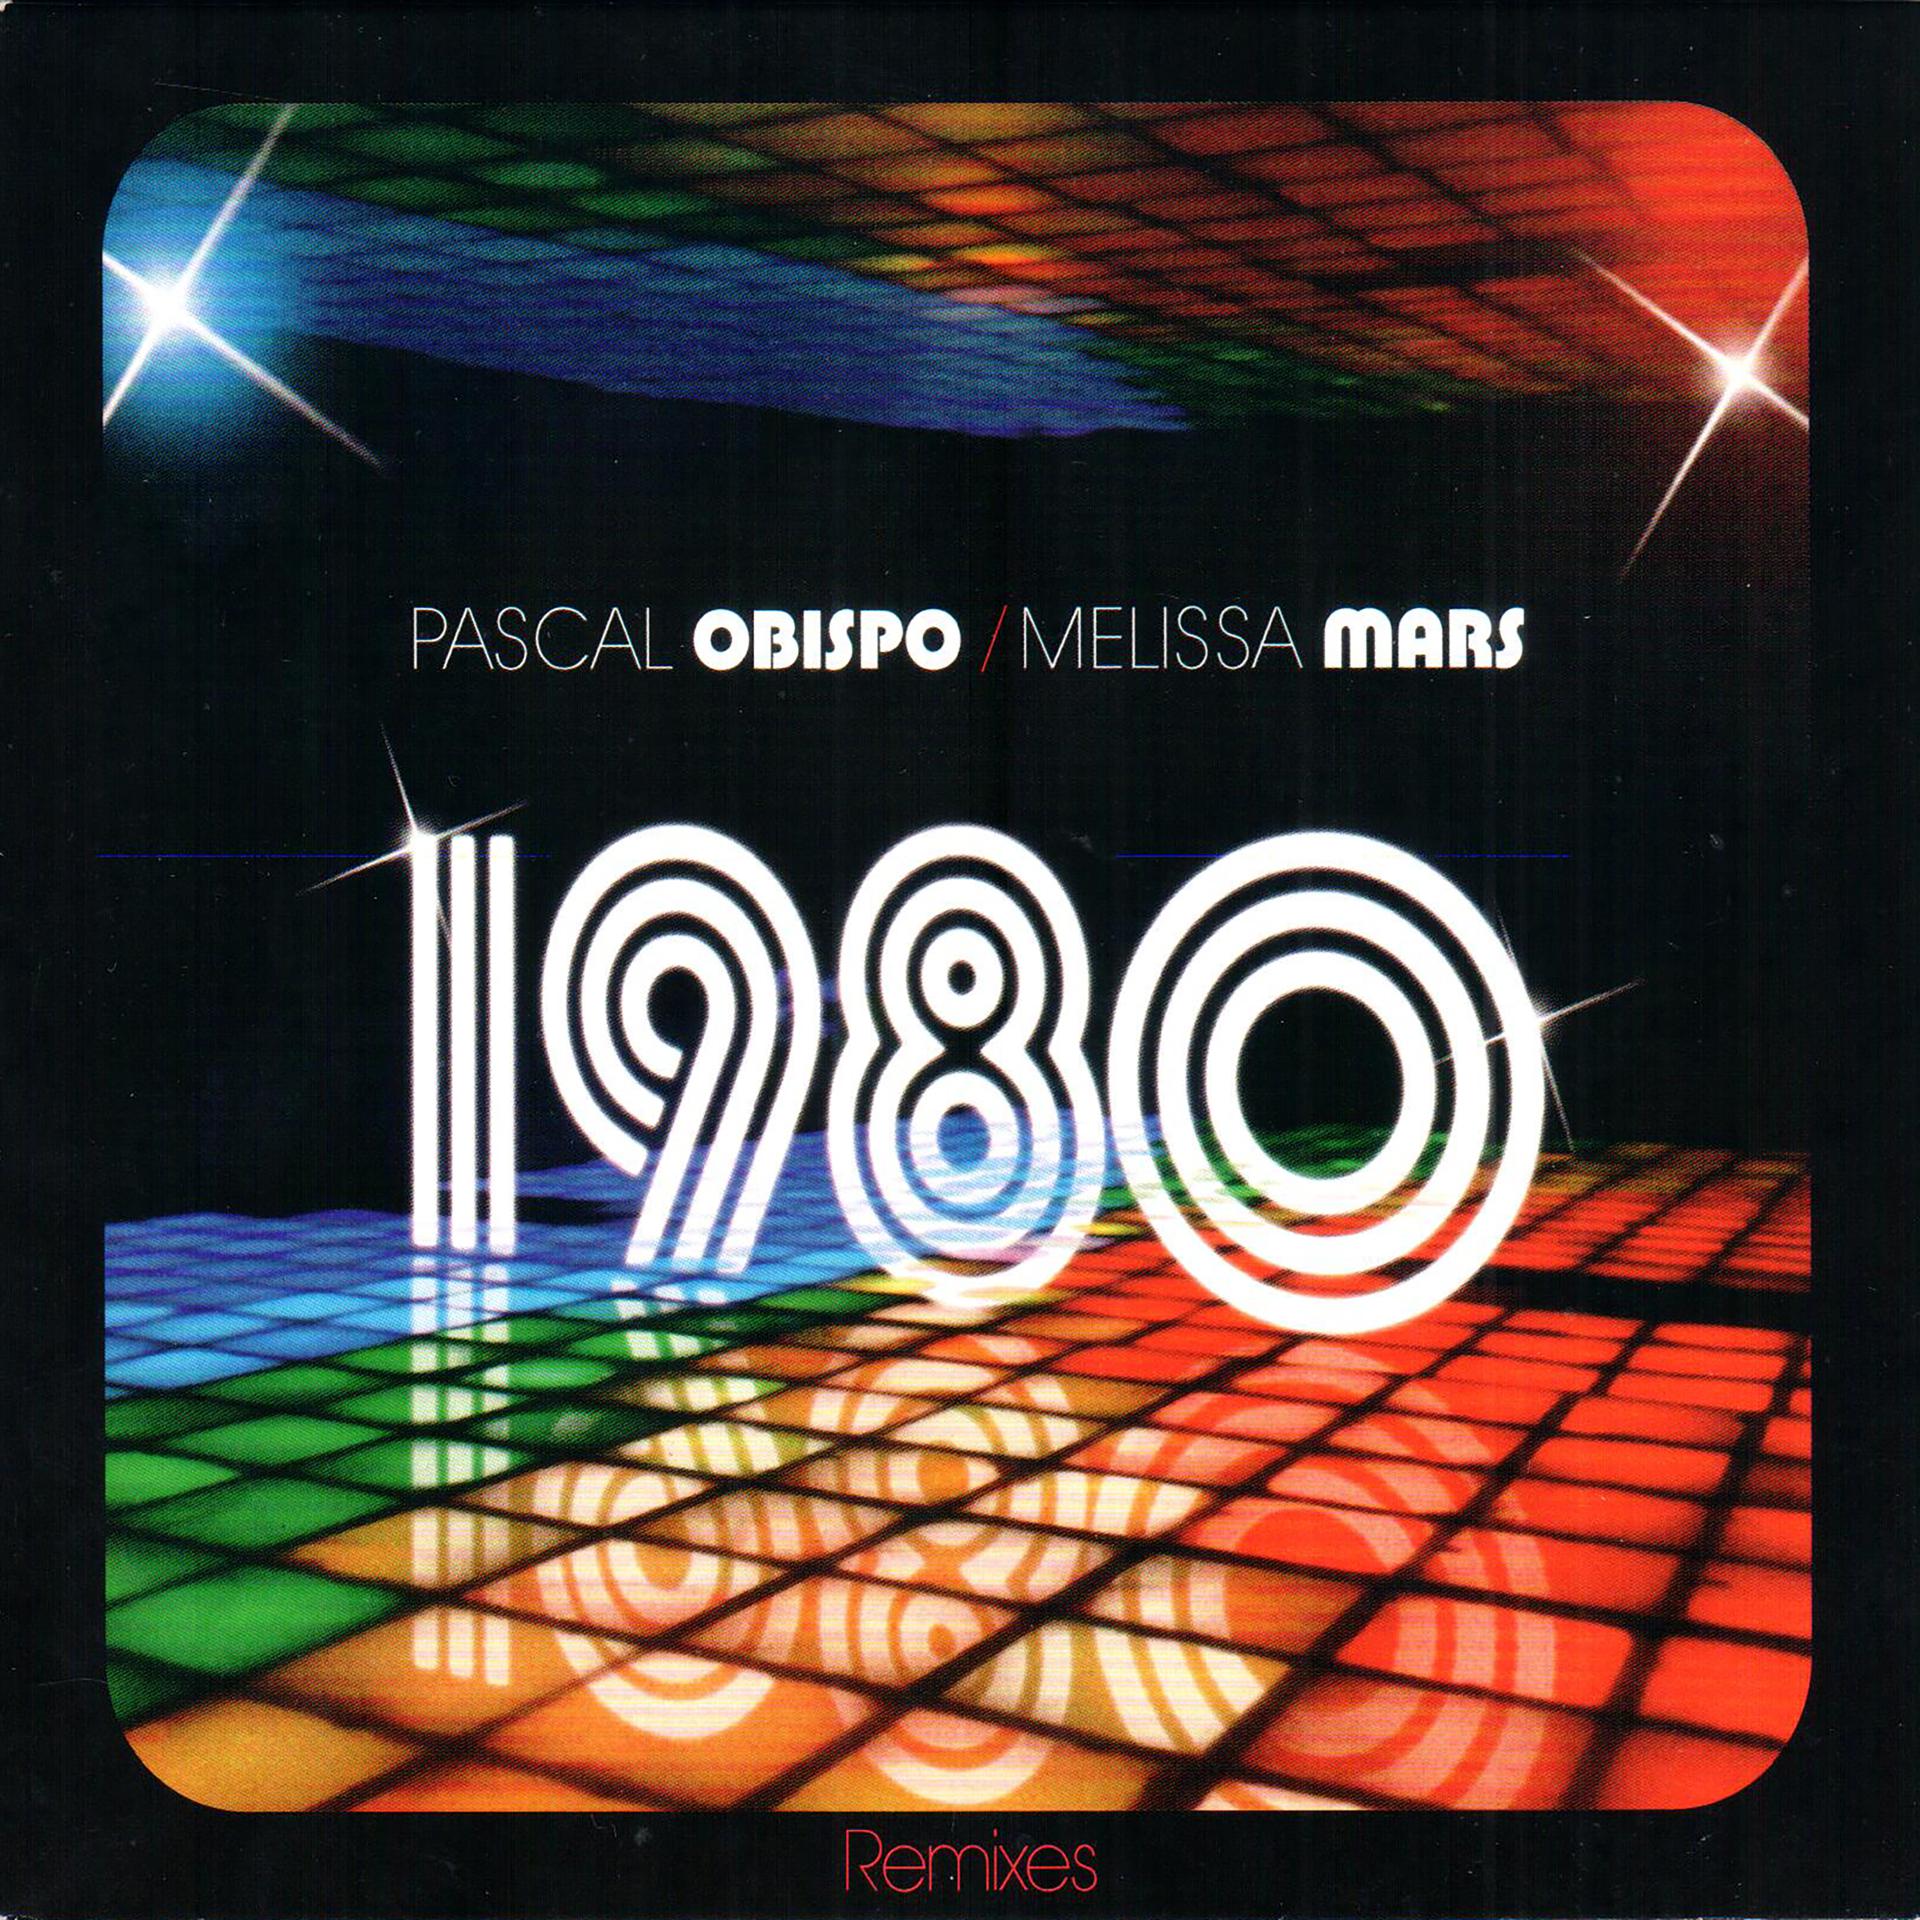 Pascal remix. Радио 1980. Медиа в 1980.